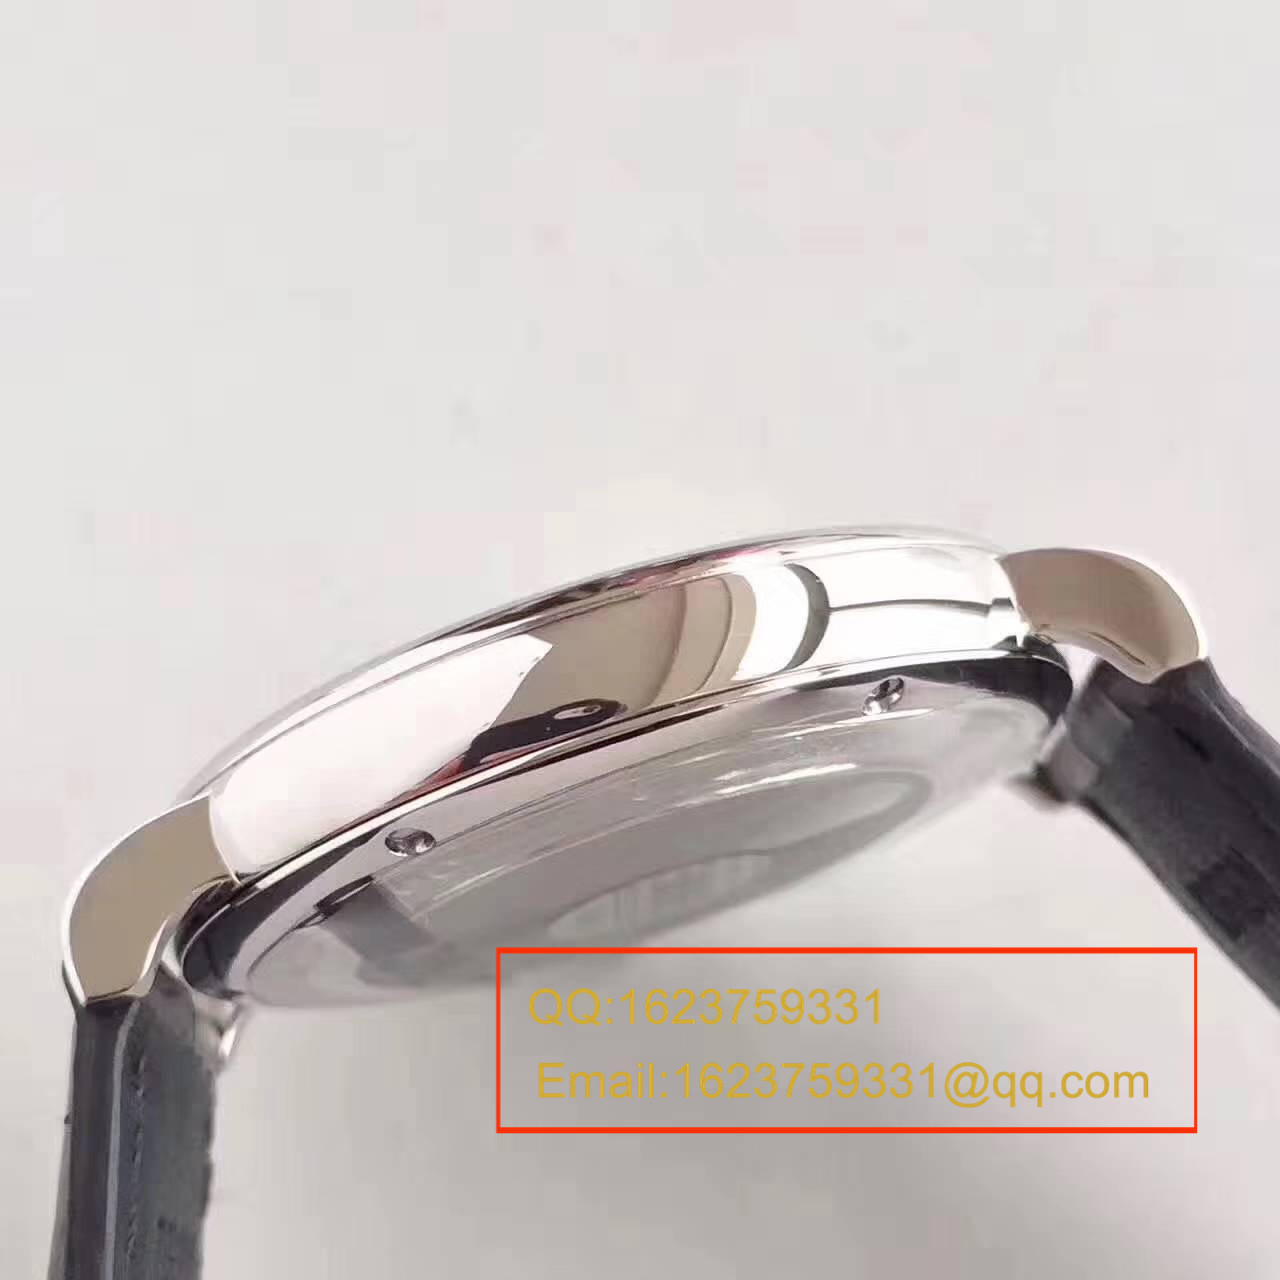 【独家视频测评MK厂1:1高仿手表】万国柏涛菲诺系列 IW356501男士腕表 